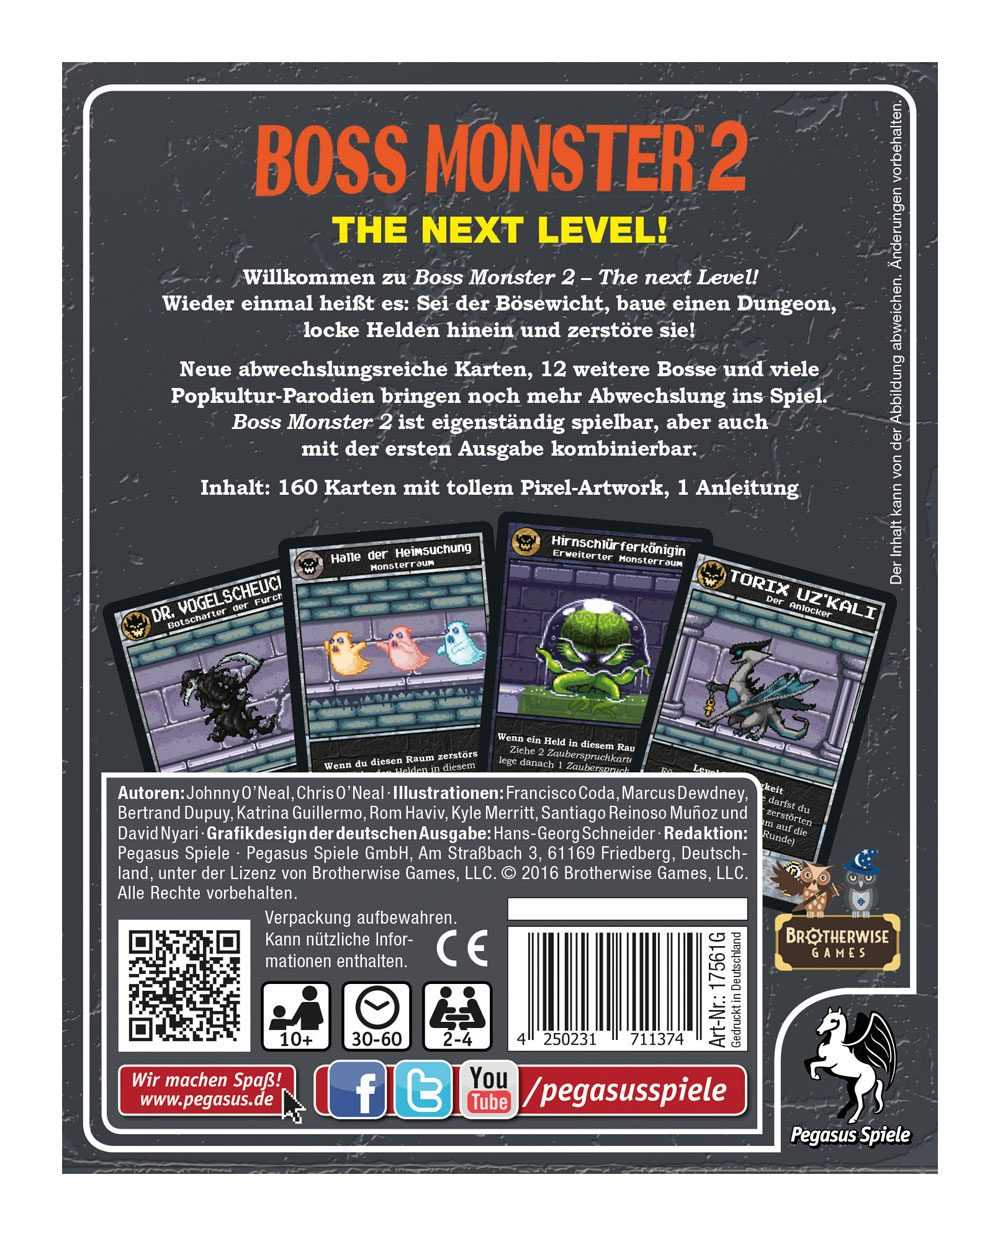 Jeux de cartes - Boss Monster 2: The Next Level jeu de cartes *ALLEMAN